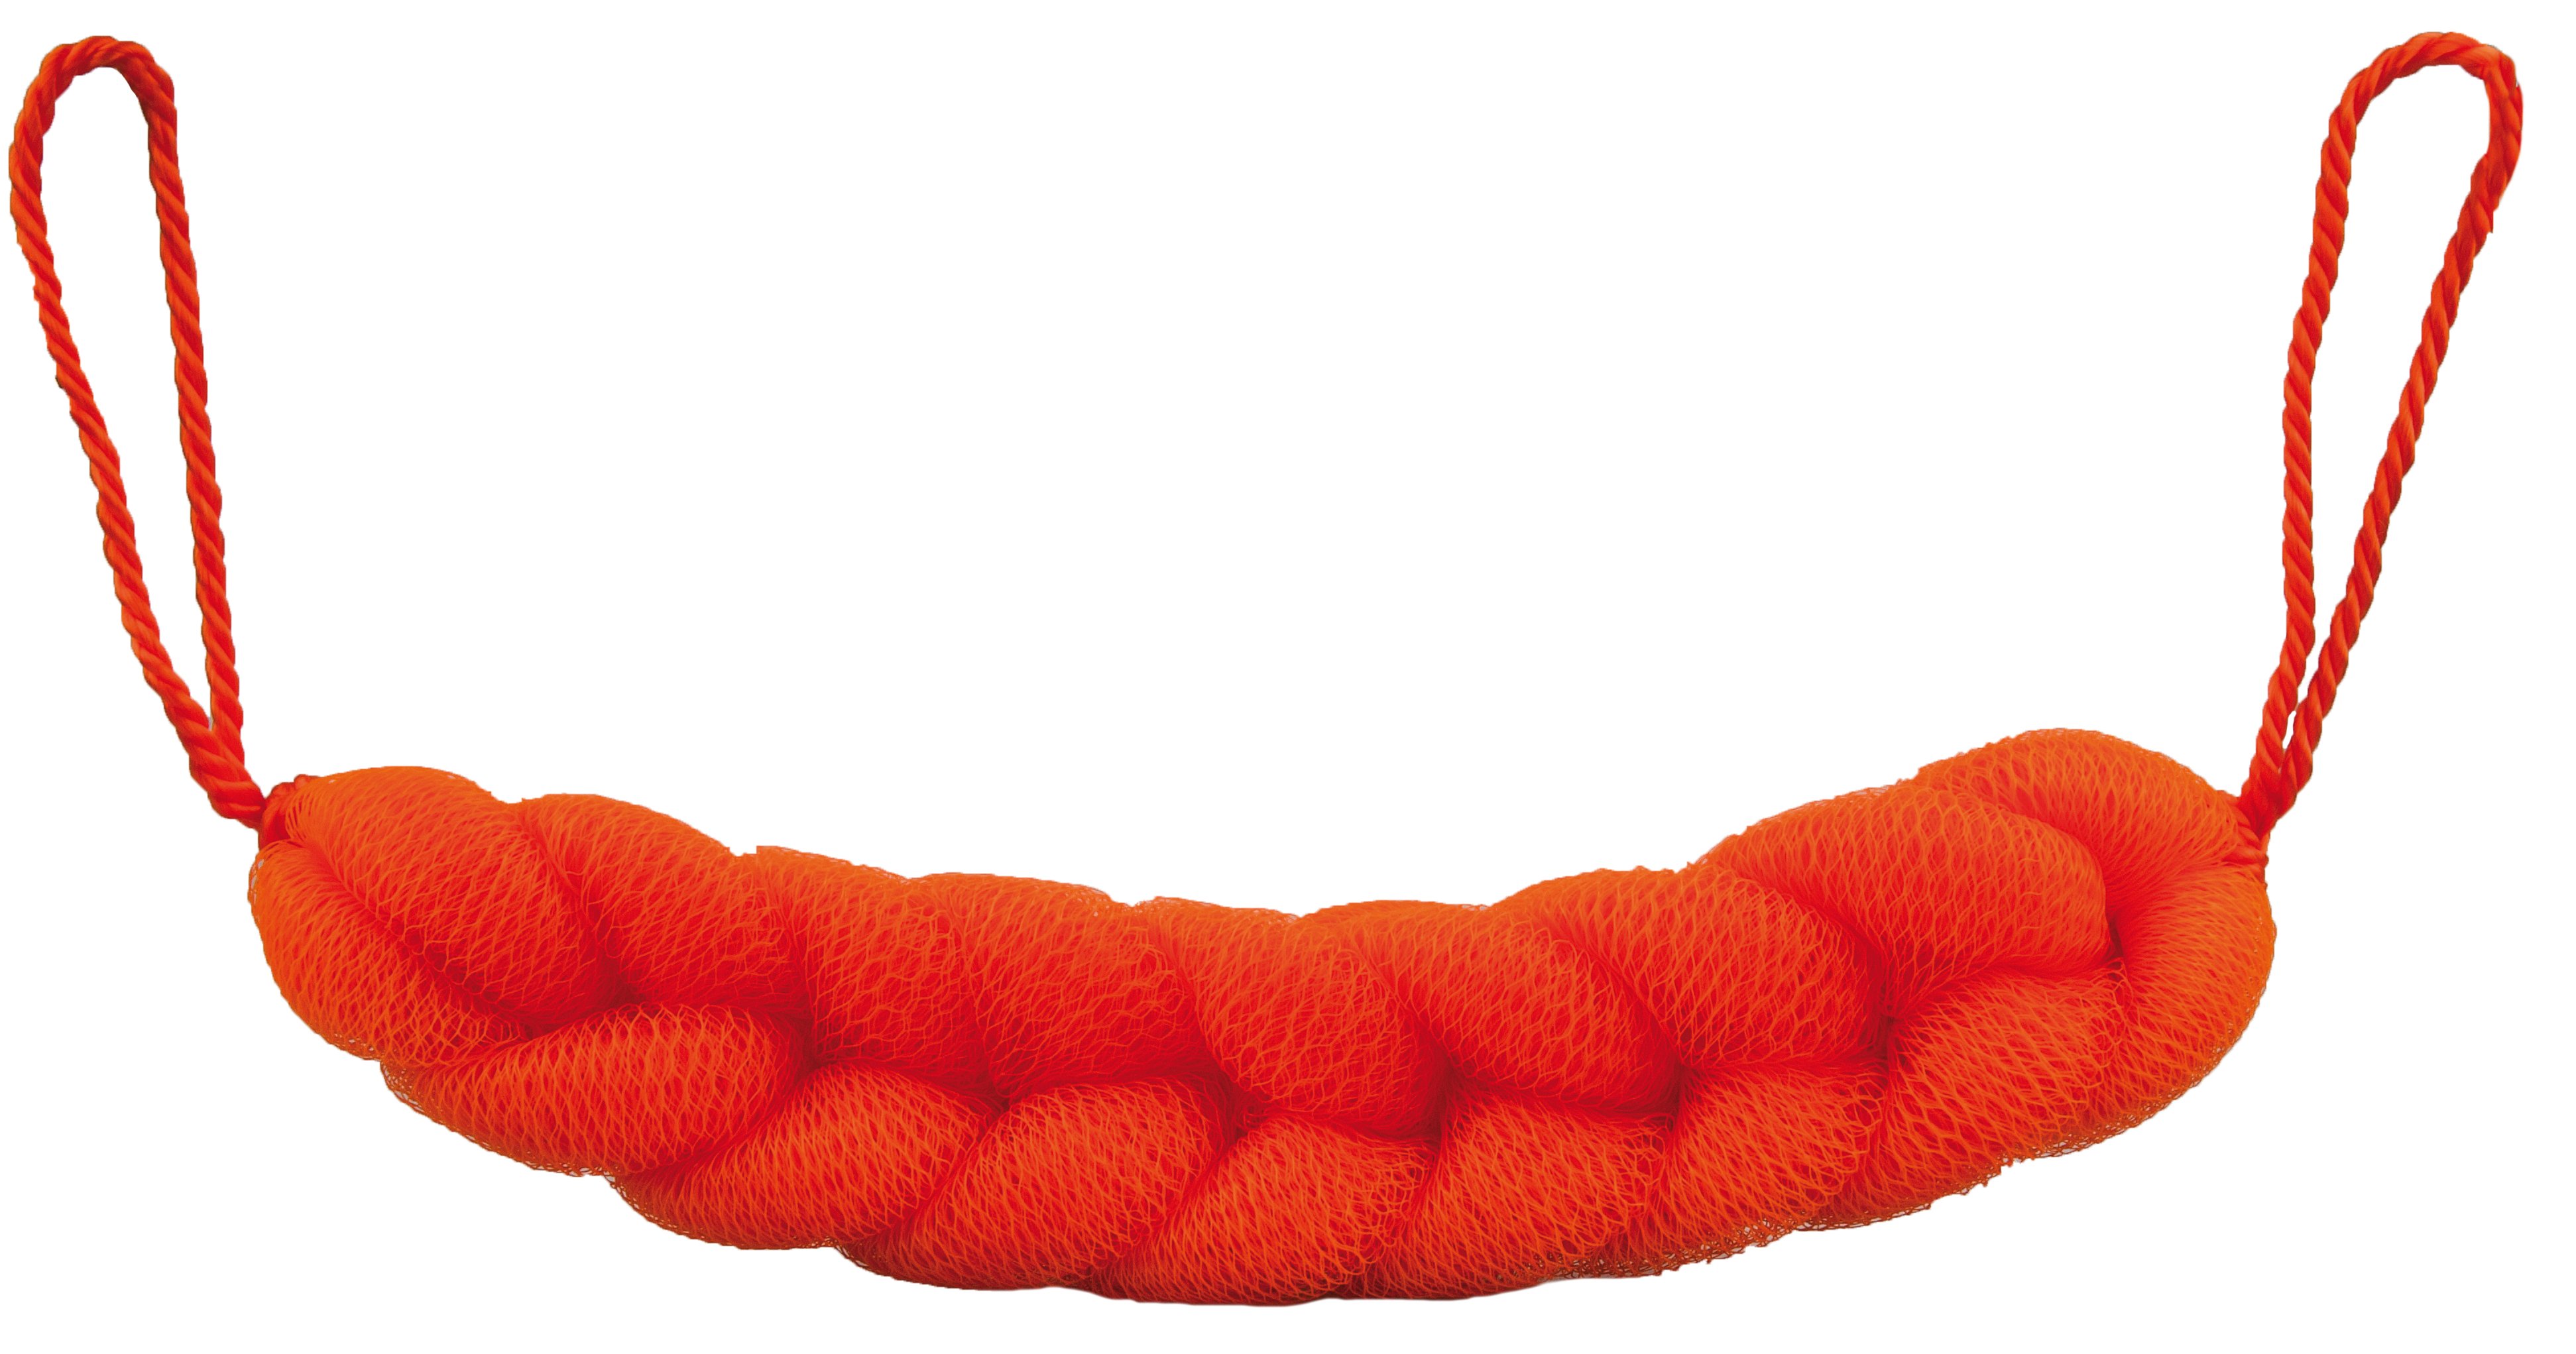 Мочалка для душа и мягкого массажа Titania, оранжевый (9109 оранж) - фото 1